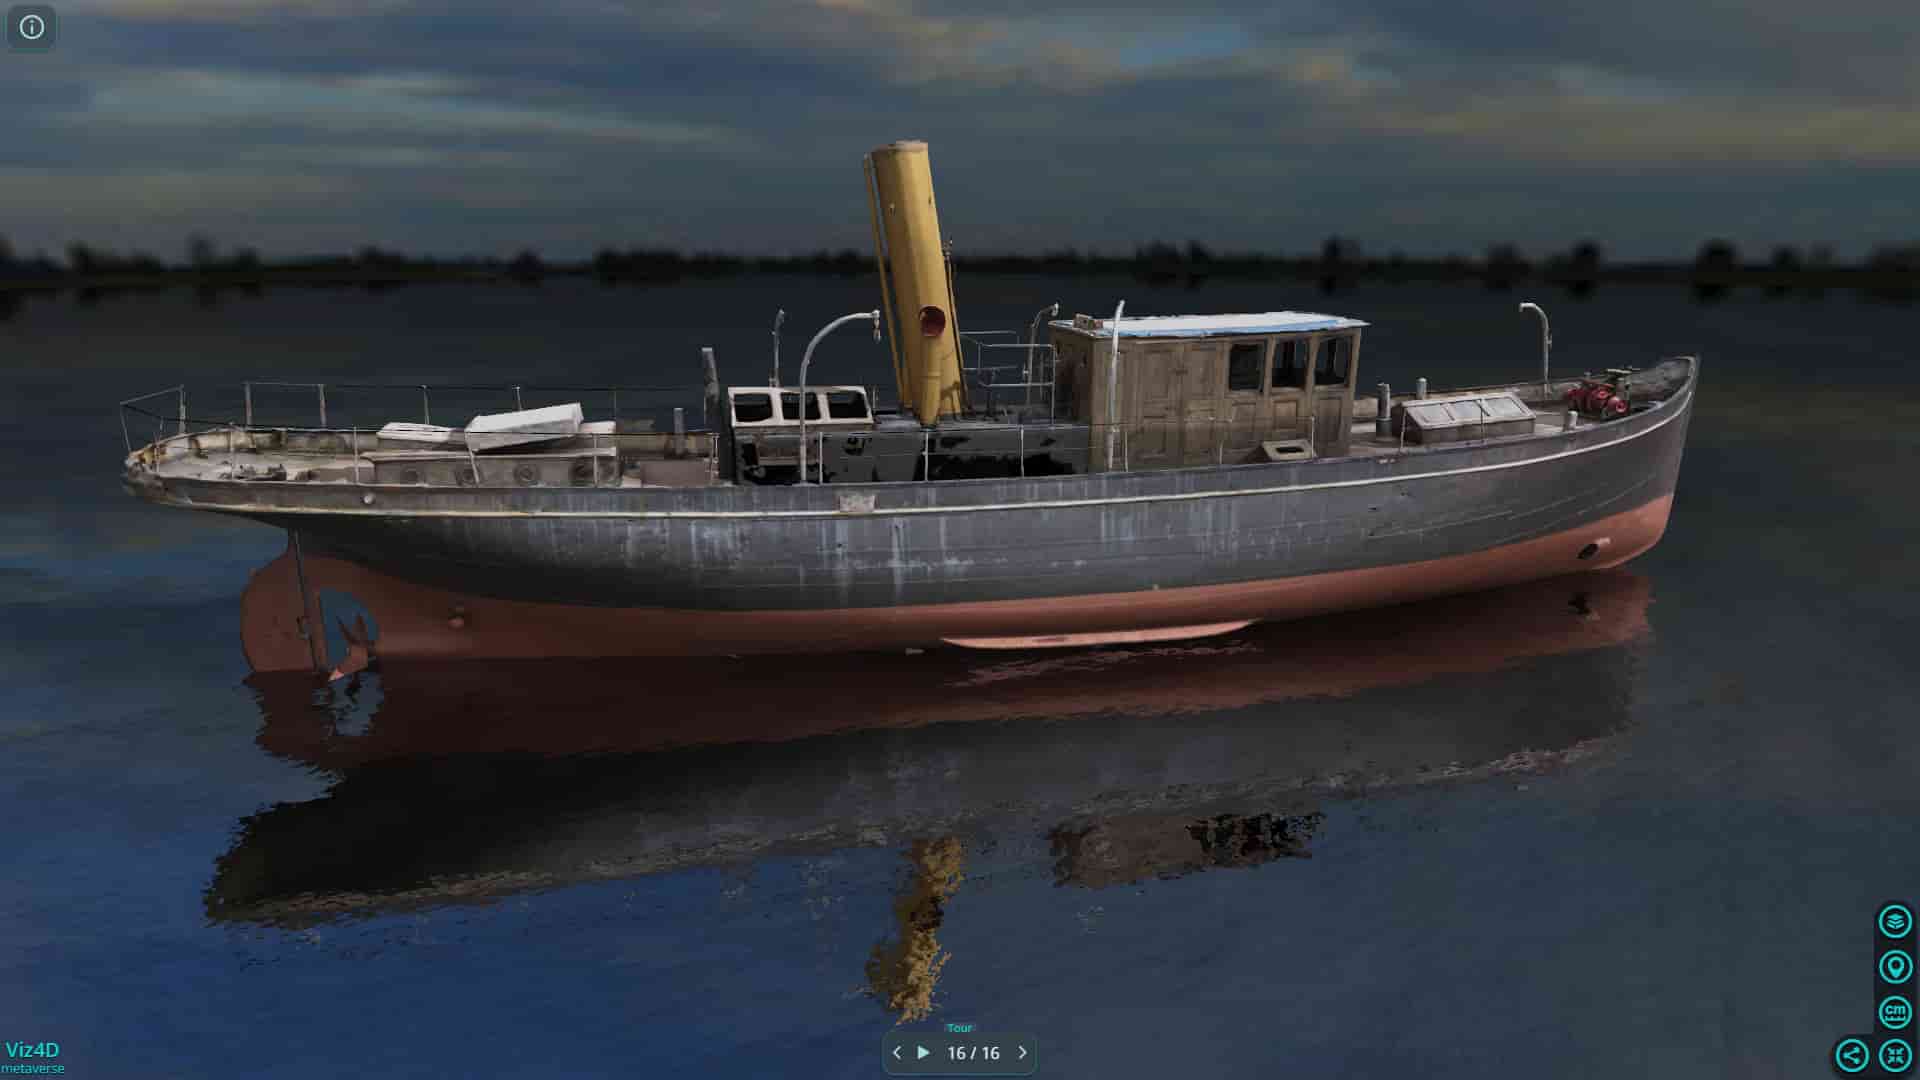 Du thuyền hơi nước đầu tiên trên thế giới - Bảo tàng Hàng hải Scotland